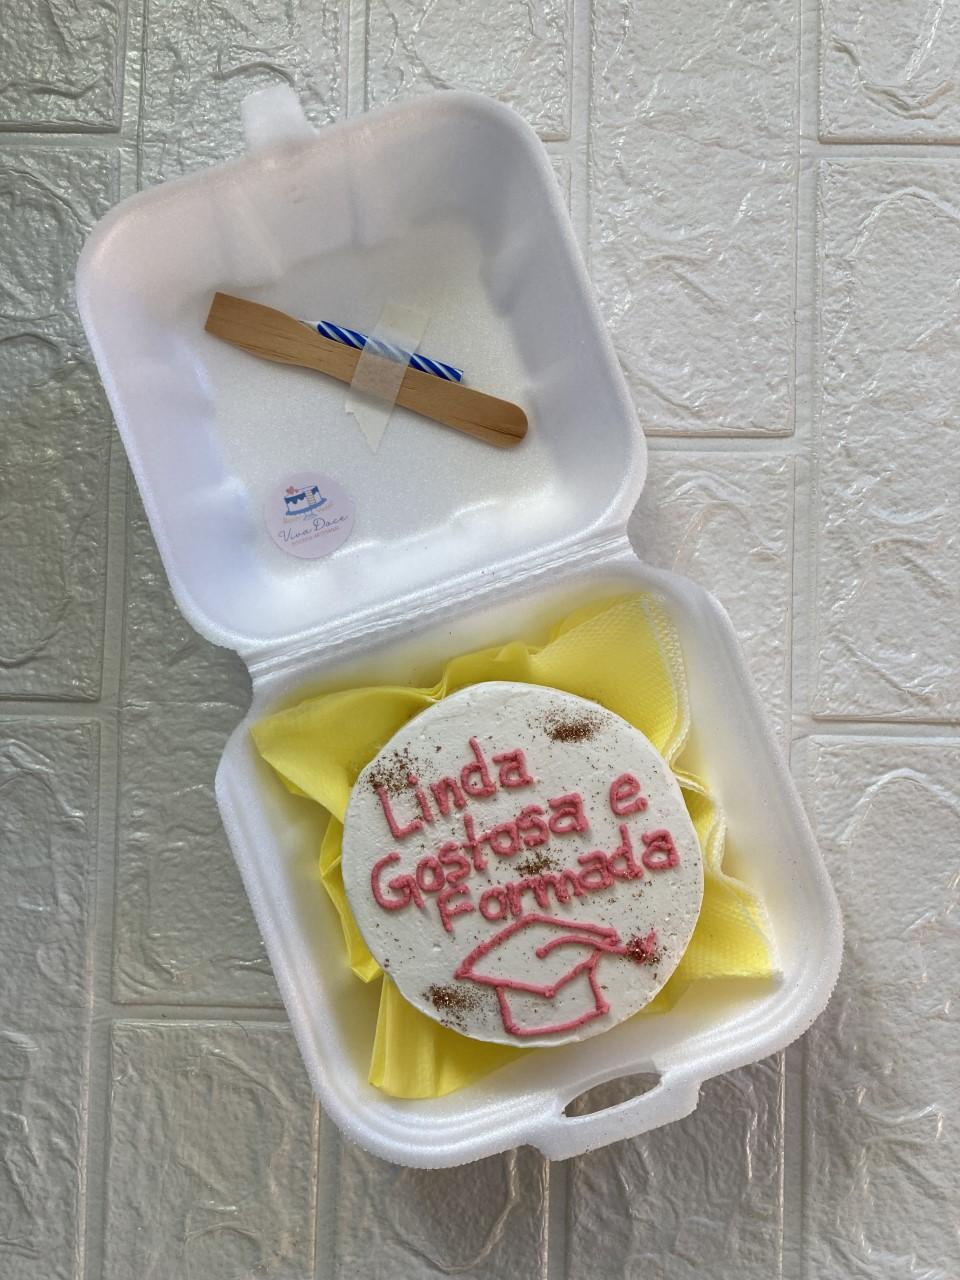 Bentô cake: minibolo com meme é o mais pedido em confeitaria na PB; entenda  tendência, Paraíba